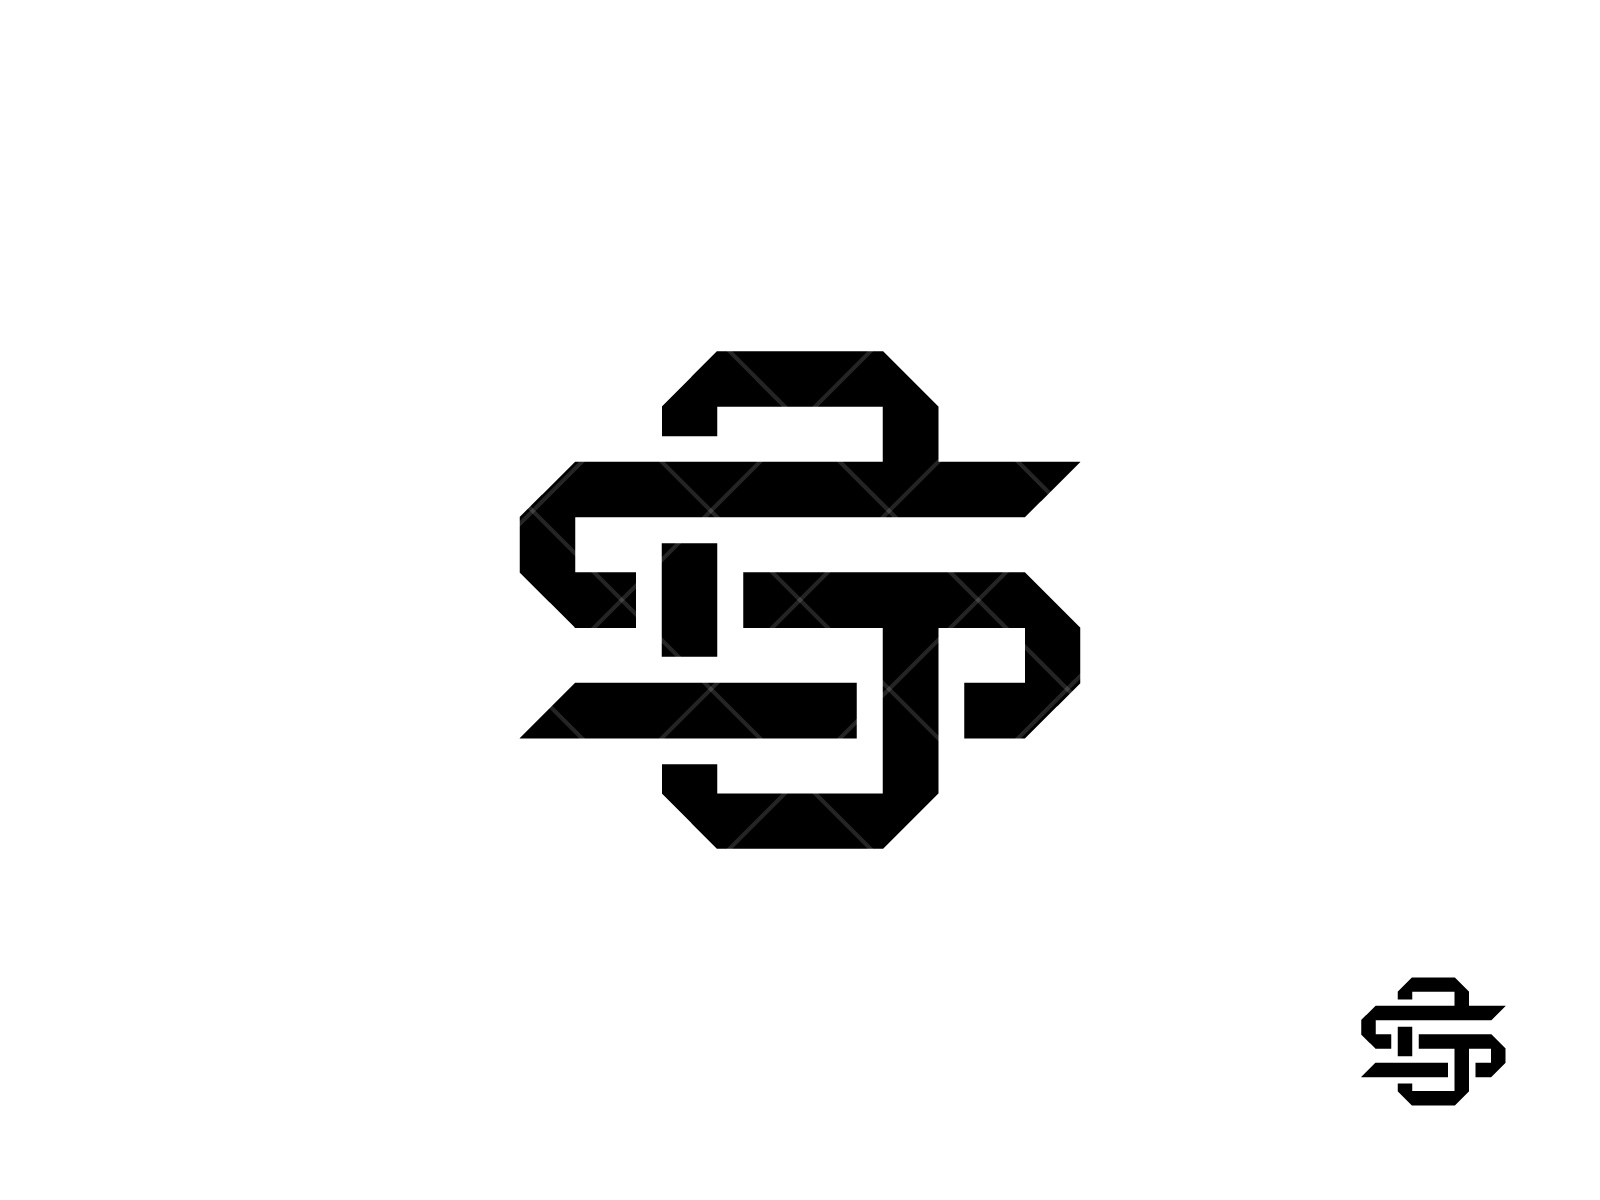 gs logo design